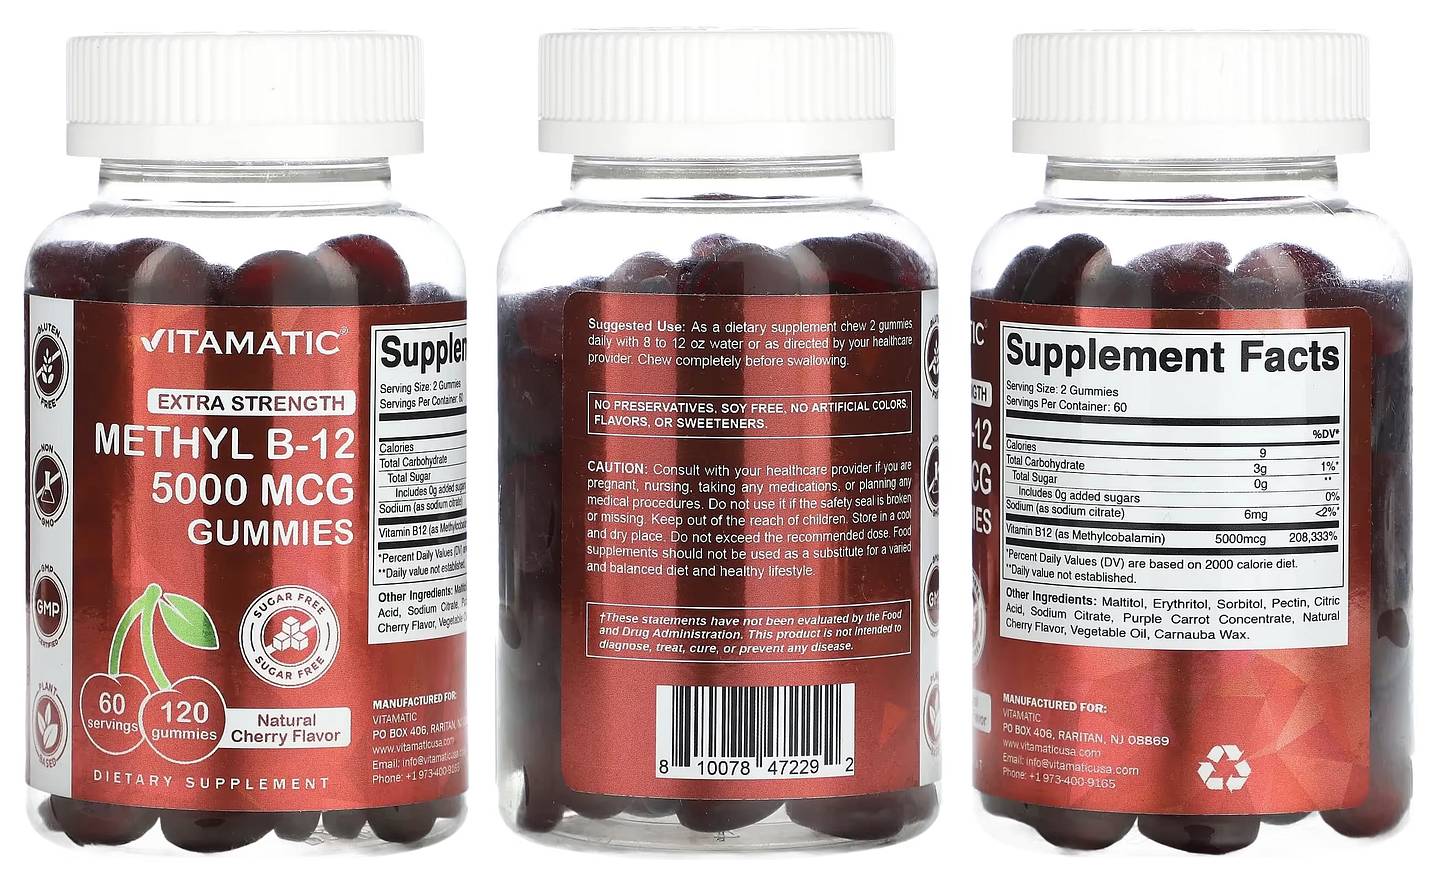 Vitamatic, Methyl B-12 Gummies packaging